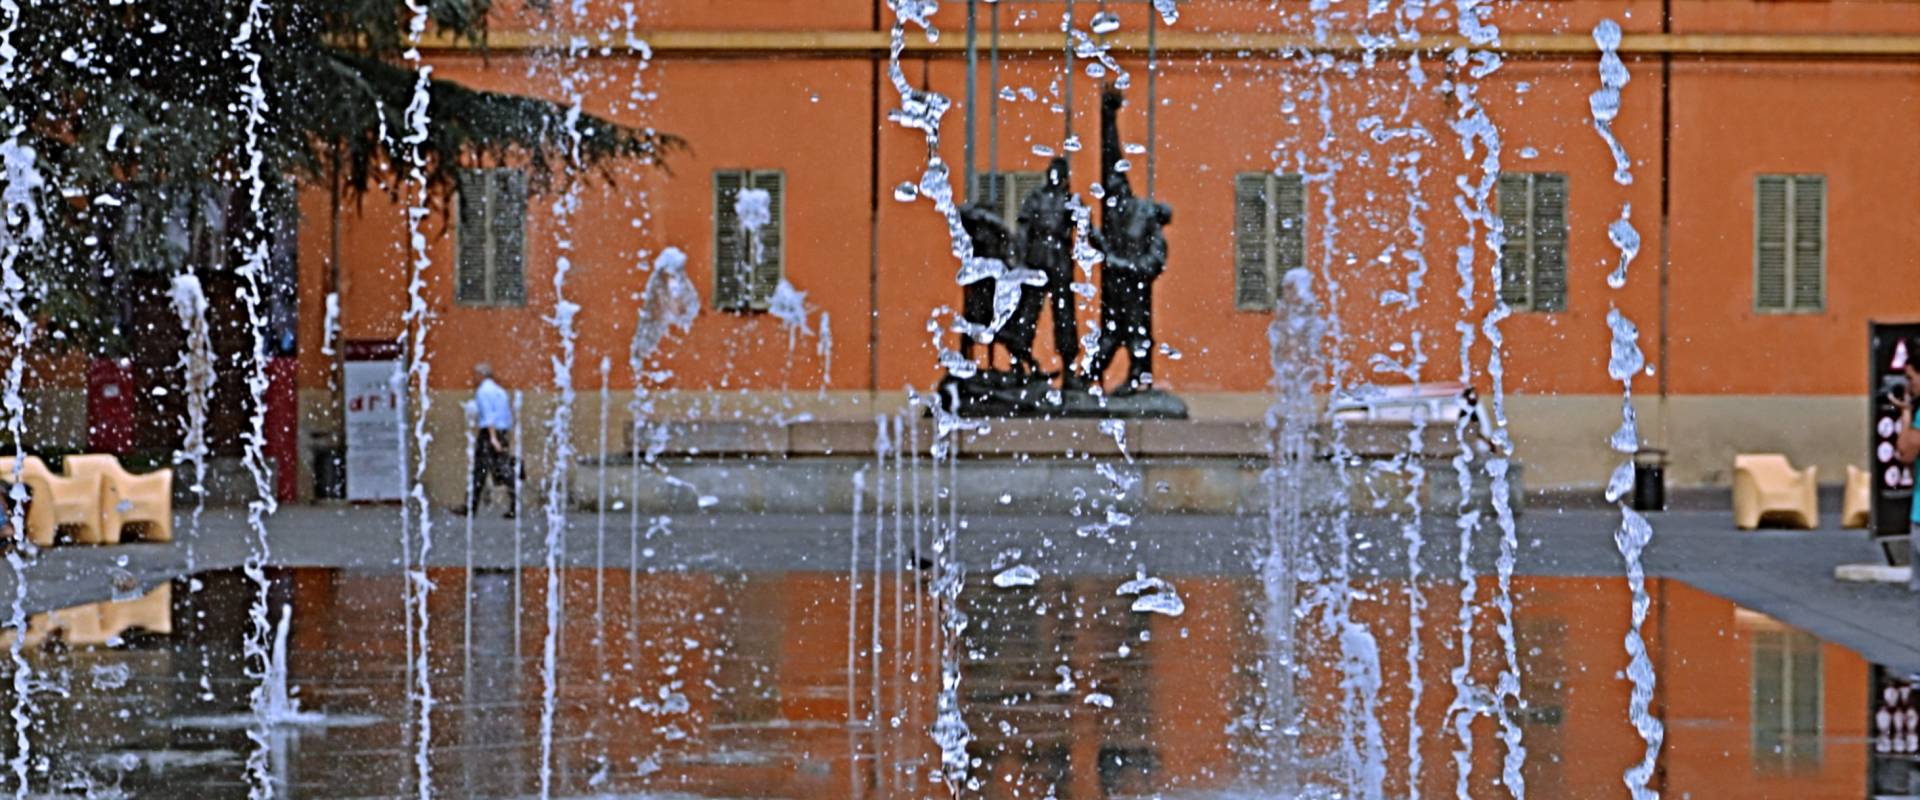 La fontana della piazza con lo sfondo del palazzo dei Musei photo by Caba2011